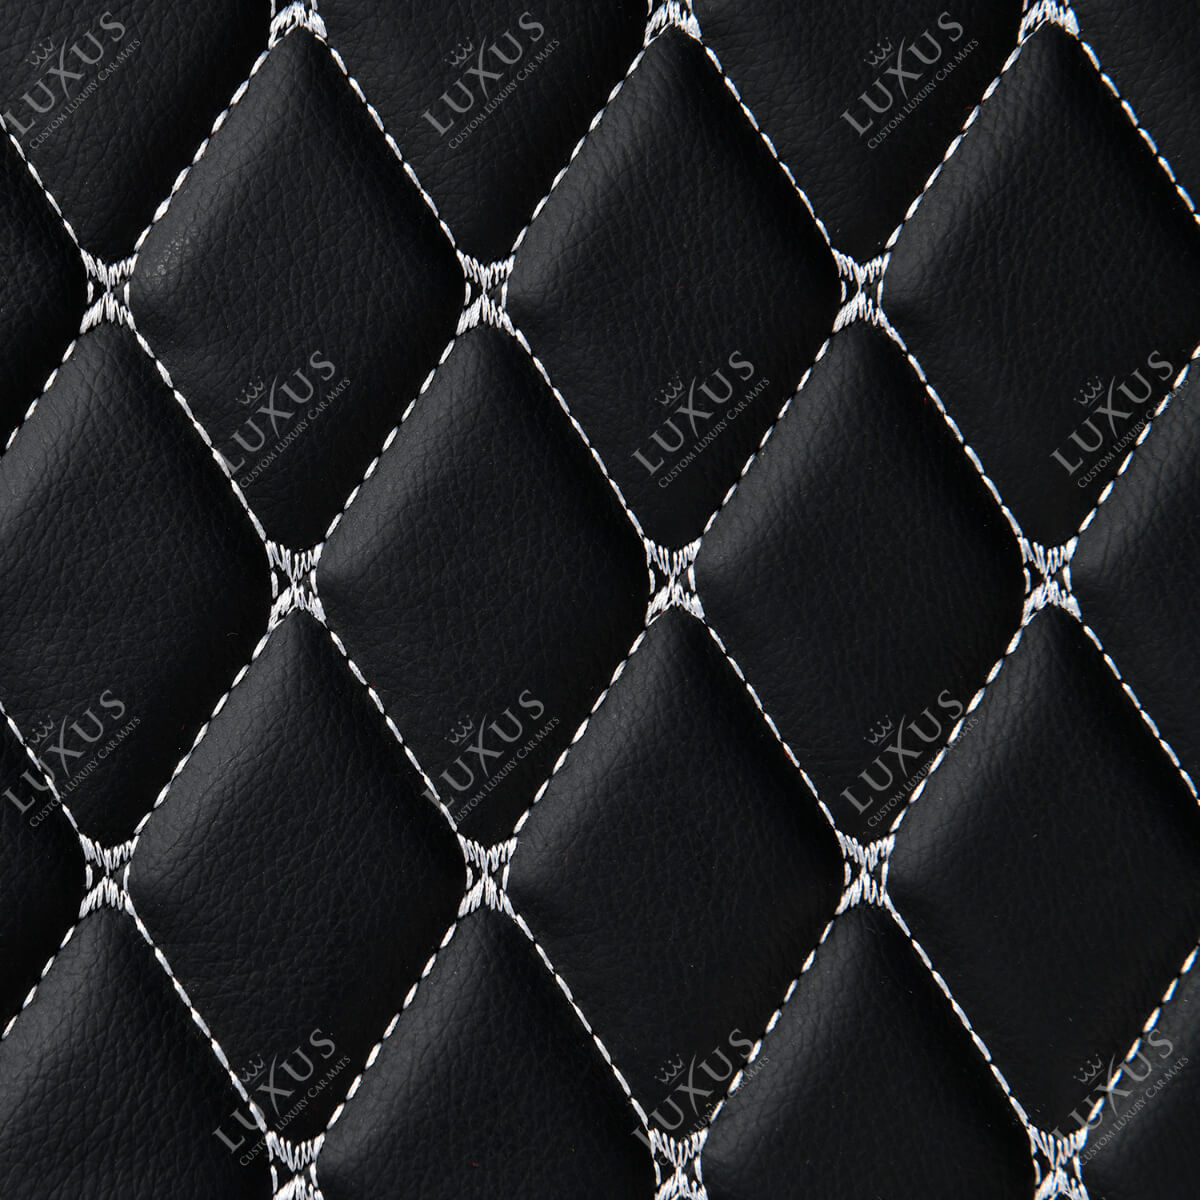 Luxus Car Mats™ - Juego de alfombrillas de lujo con costuras en blanco y negro